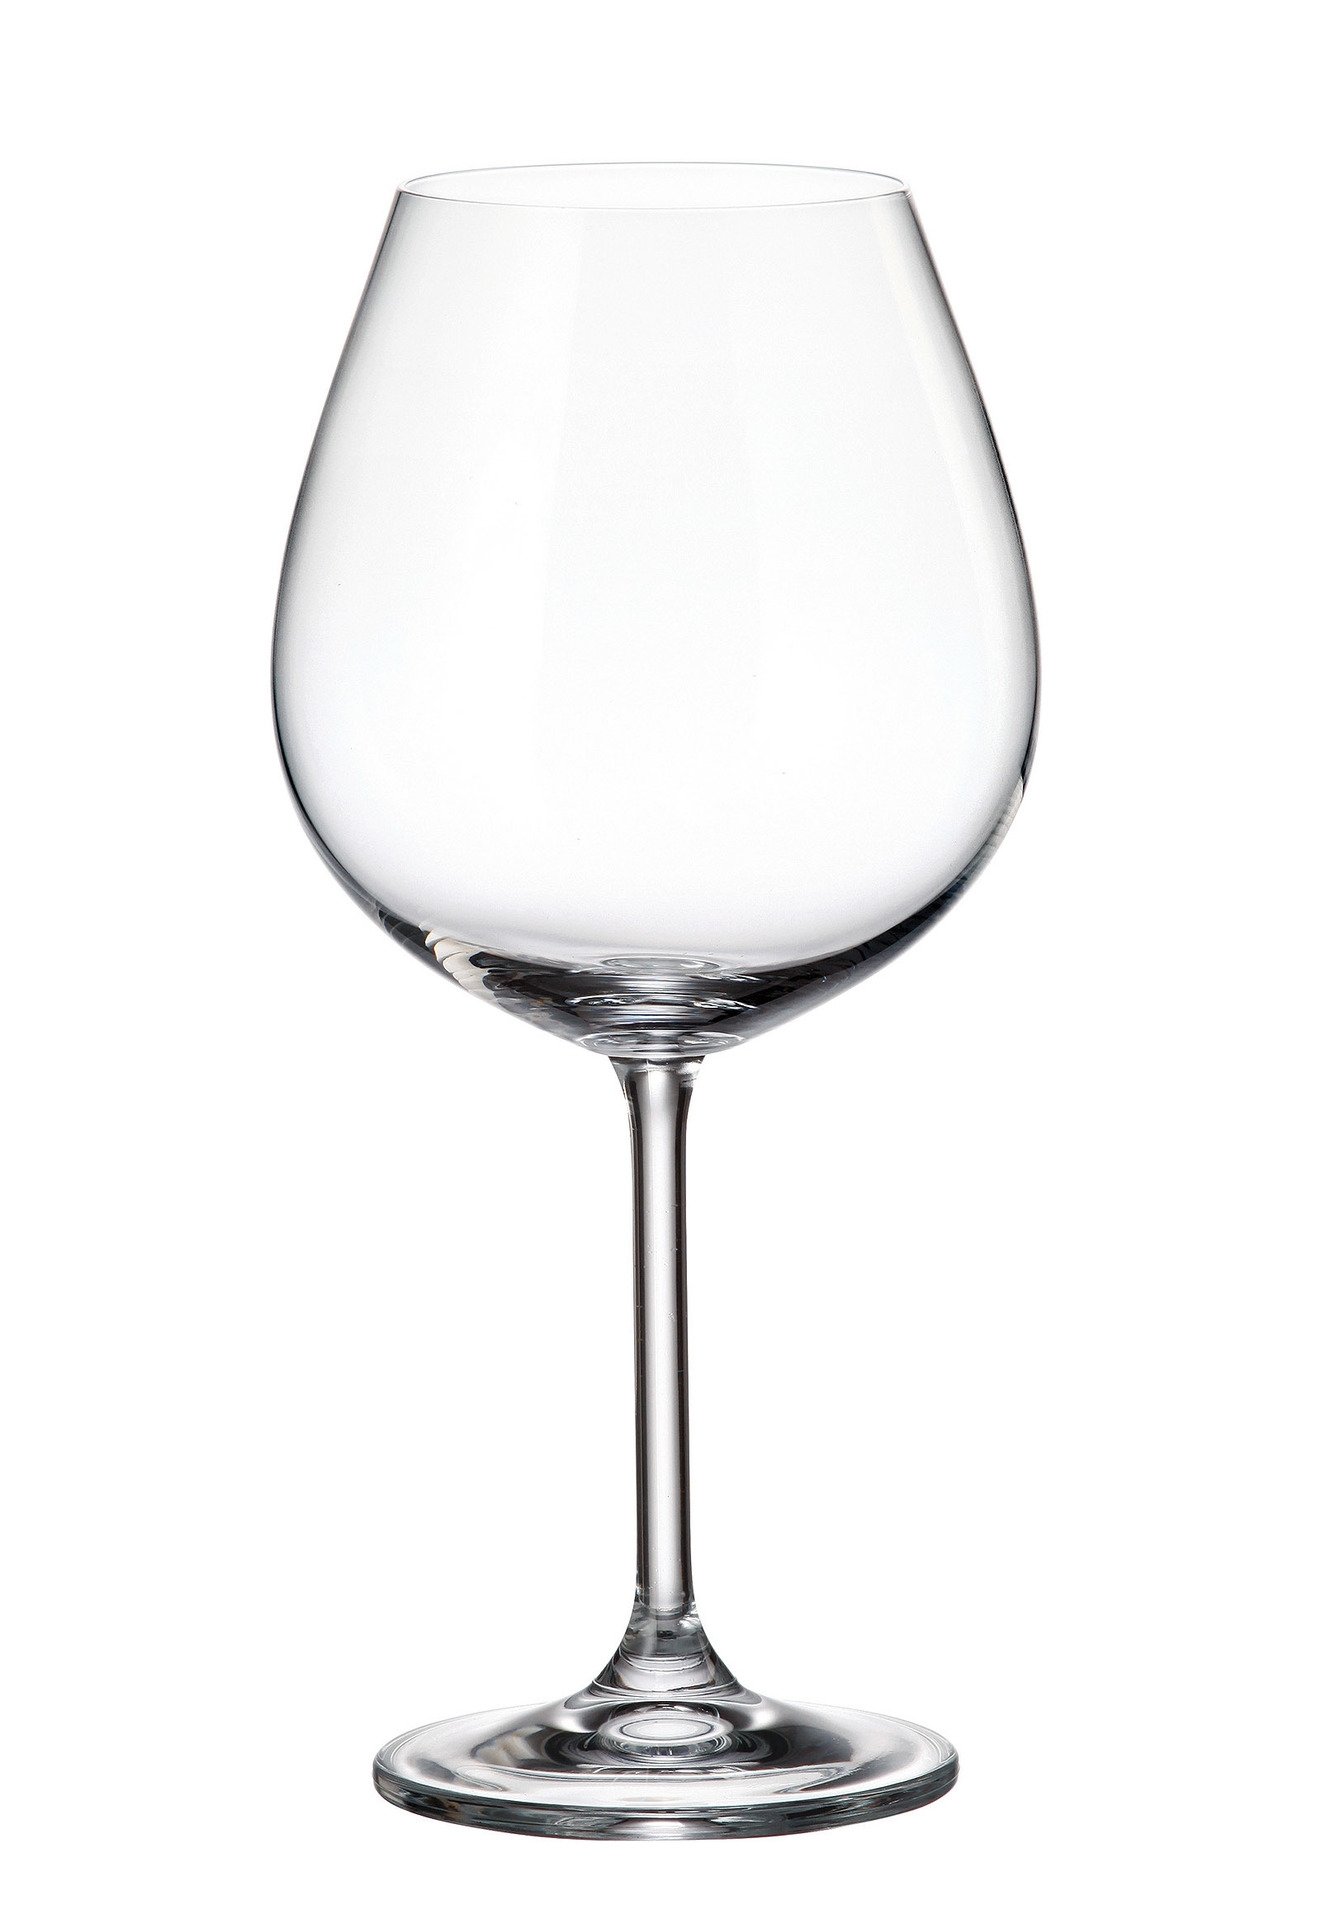 Ποτήρι Κρασιού Κρυστάλλινο Bohemia Colibri 650ml CTB03202065 (Σετ 6 Τεμάχια) (Υλικό: Κρύσταλλο, Χρώμα: Διάφανο , Μέγεθος: Κολωνάτο) - Κρύσταλλα Βοημίας - CTB03202065